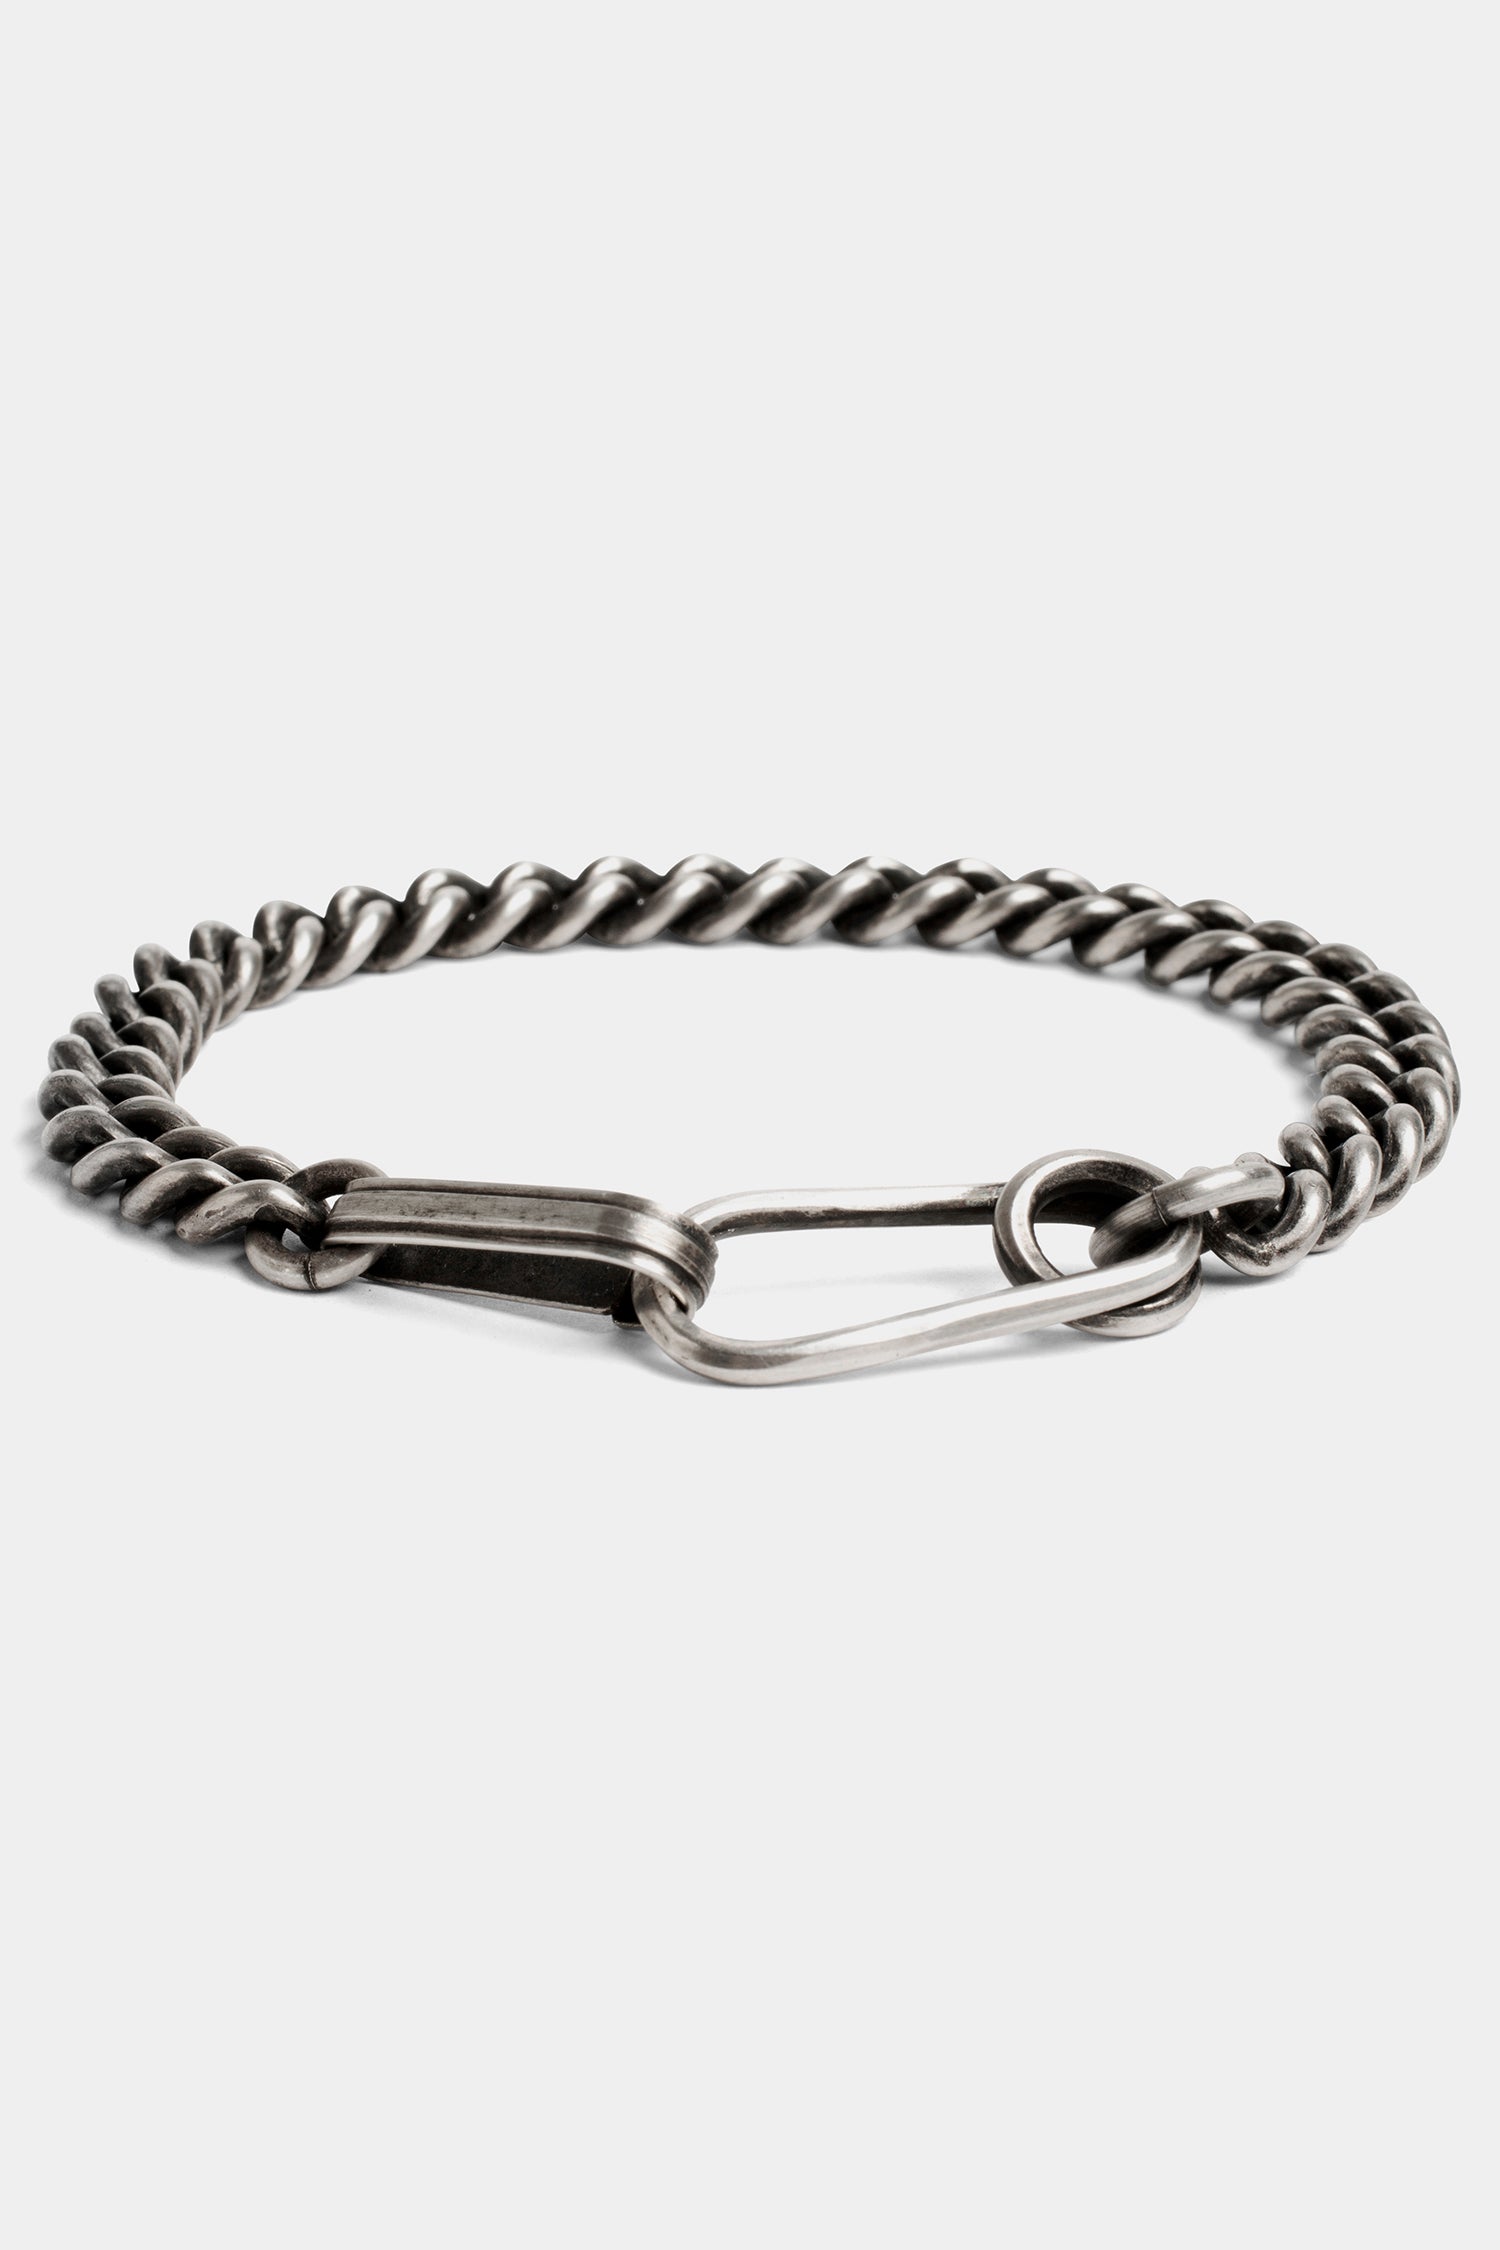 Werkstatt München | Curl chain bracelet – ORIMONO.eu